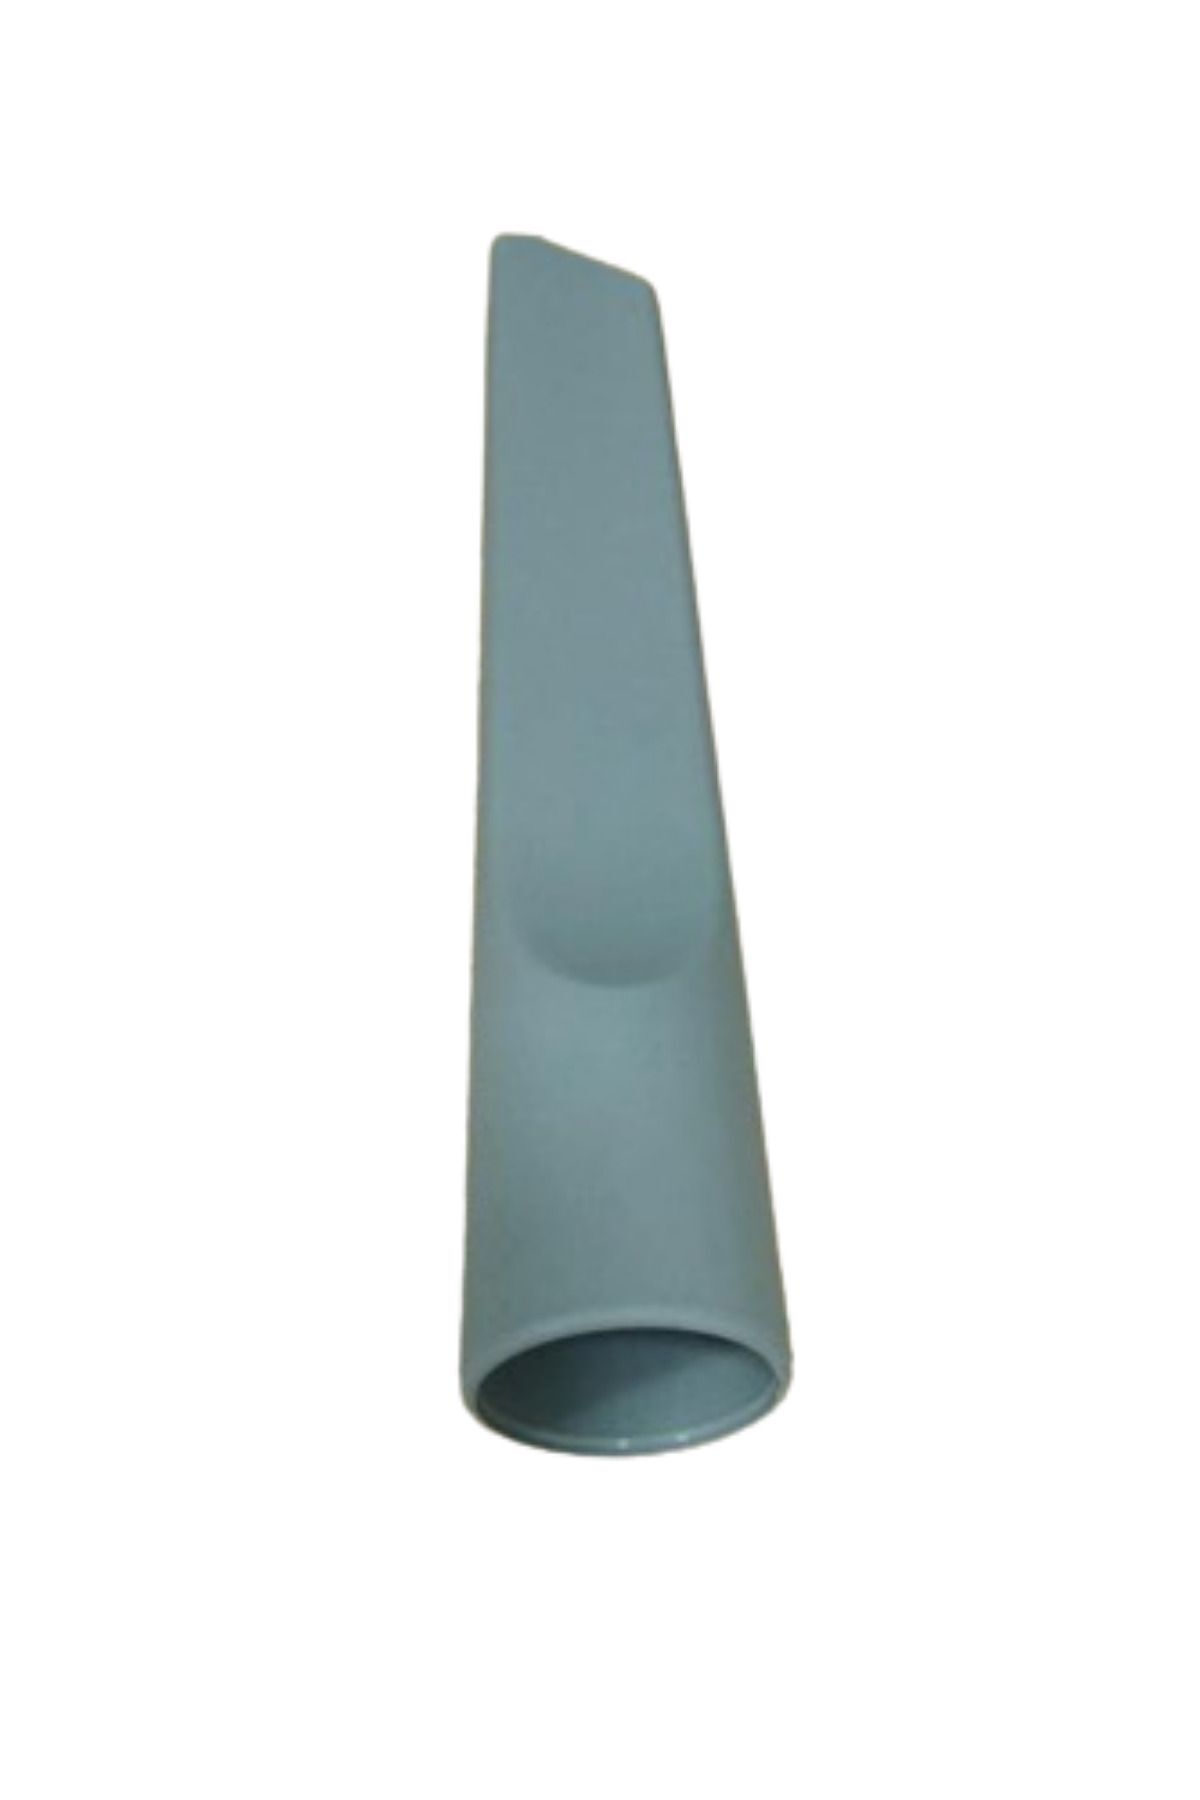 Hotpoint Sl C18 Aa0 Süpürge Koltuk Arası Düz Emici Başlık Gri Renk(22,5 cm)